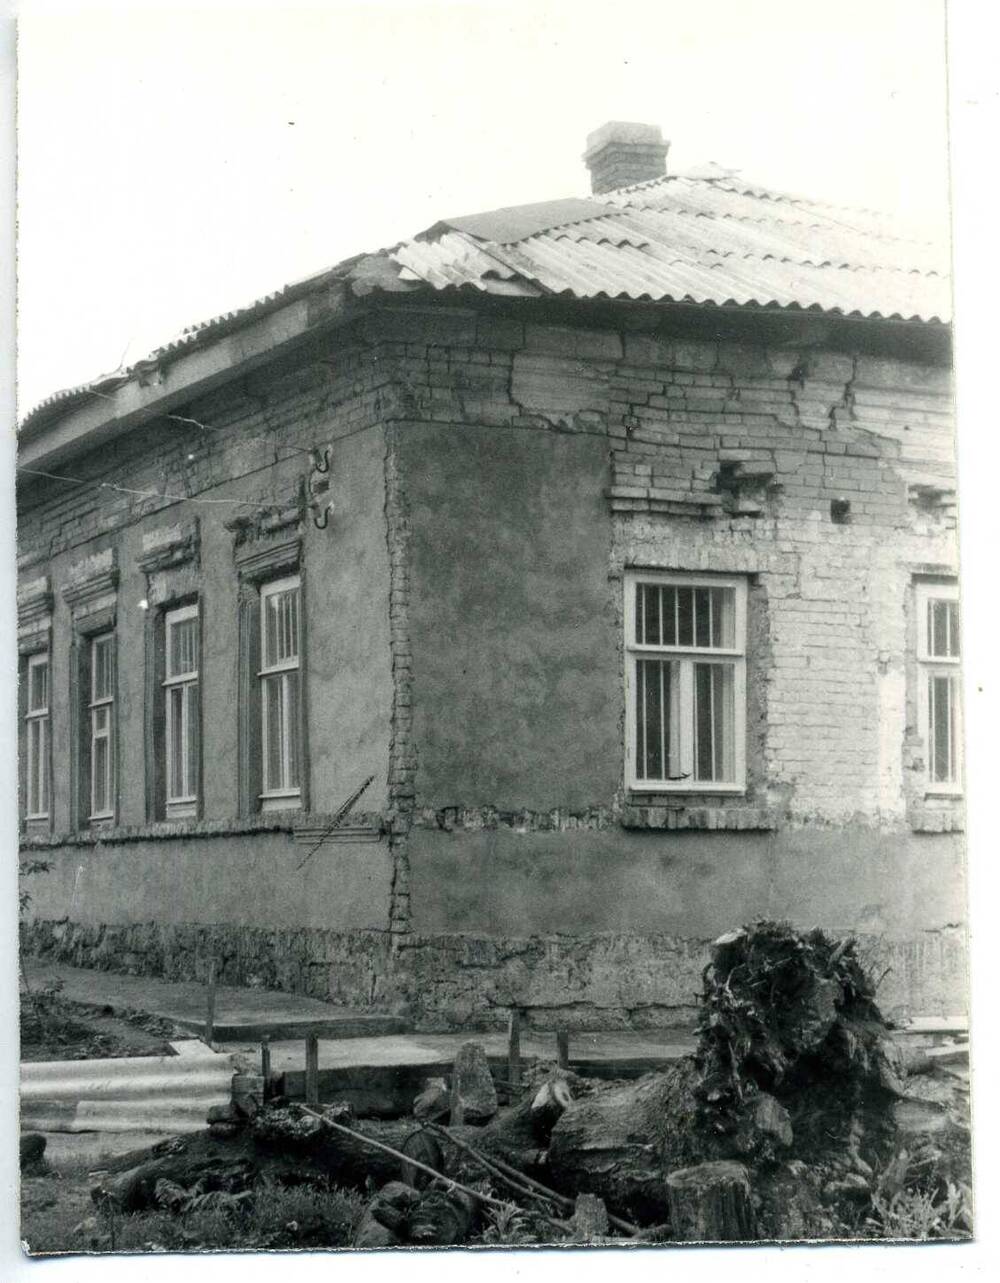 Фотография:бывший дом подполковника А.П. Лотошникова во время реставрации